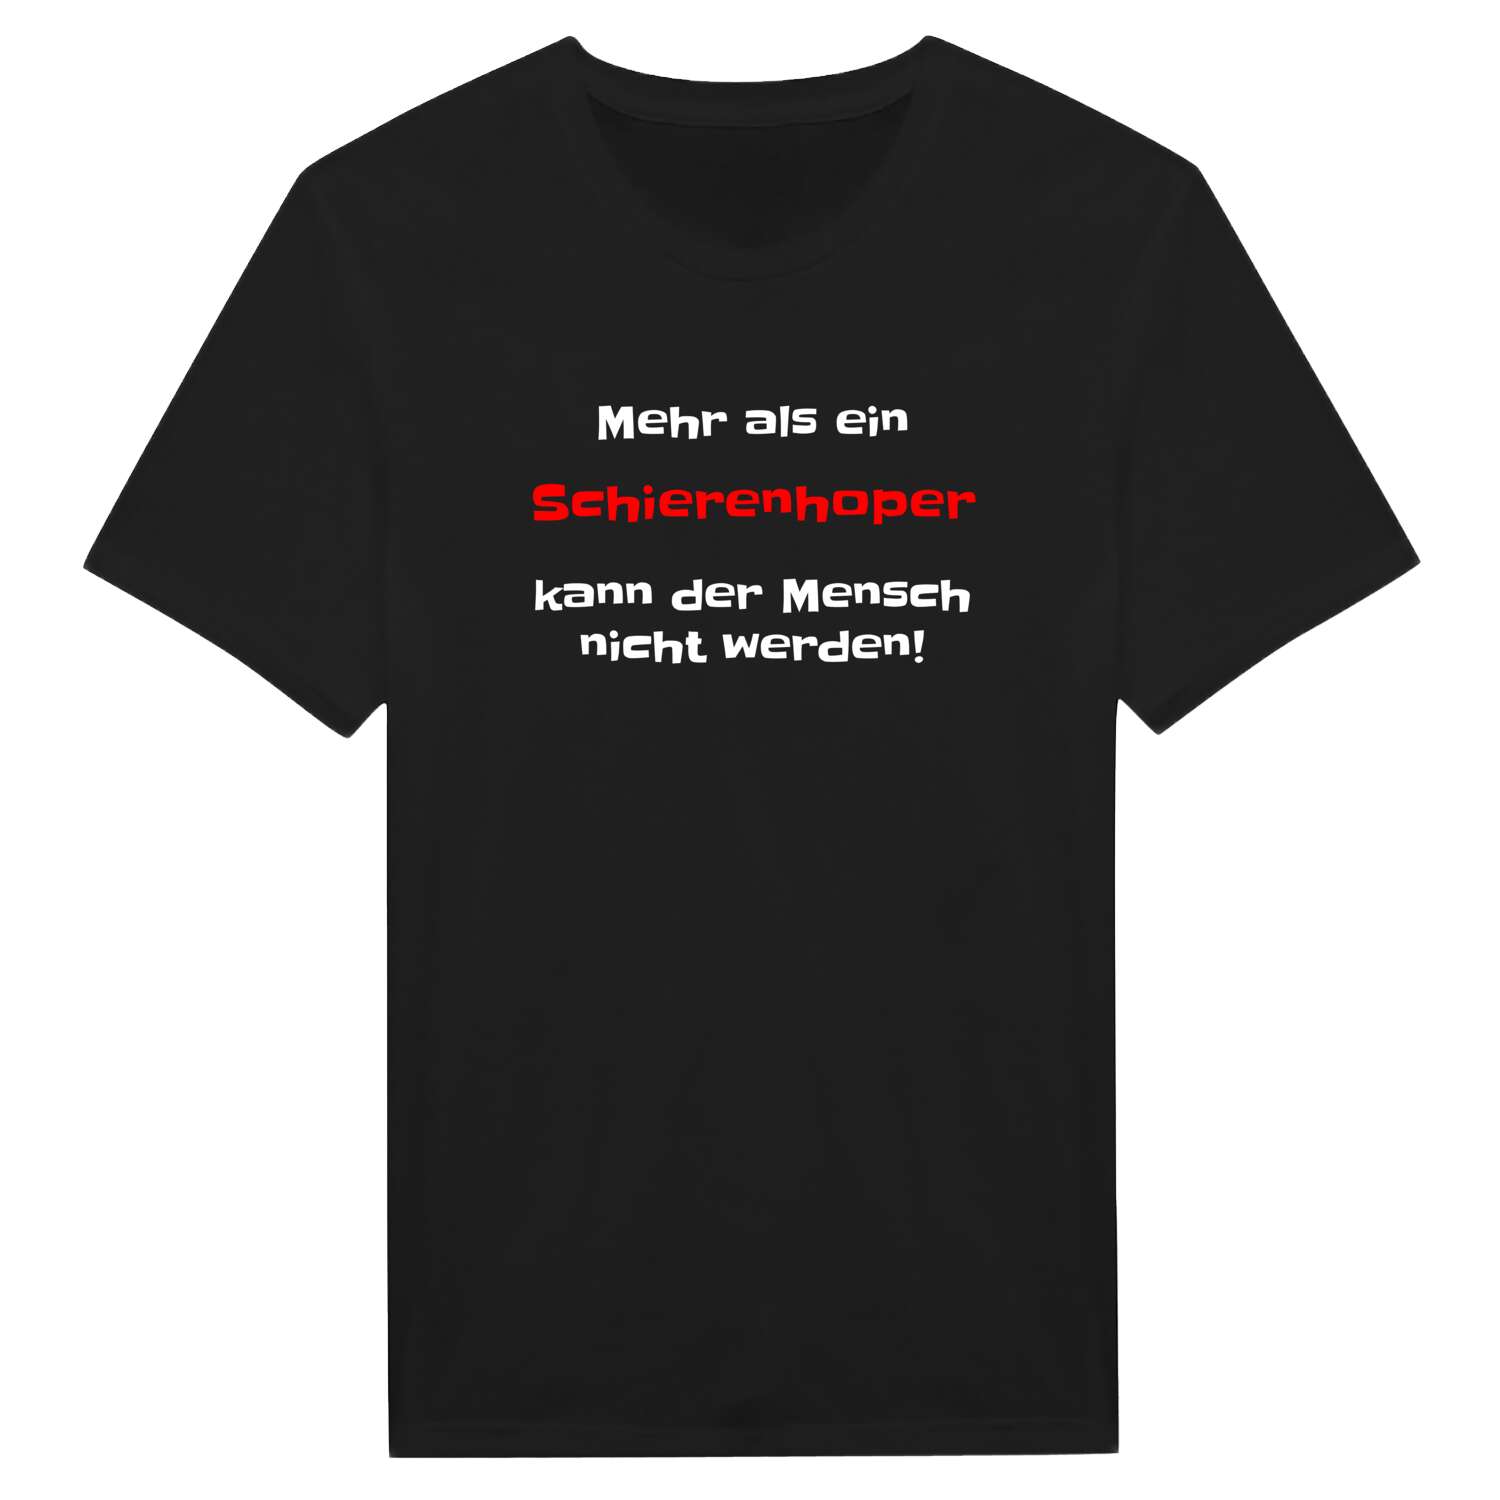 Schierenhop T-Shirt »Mehr als ein«